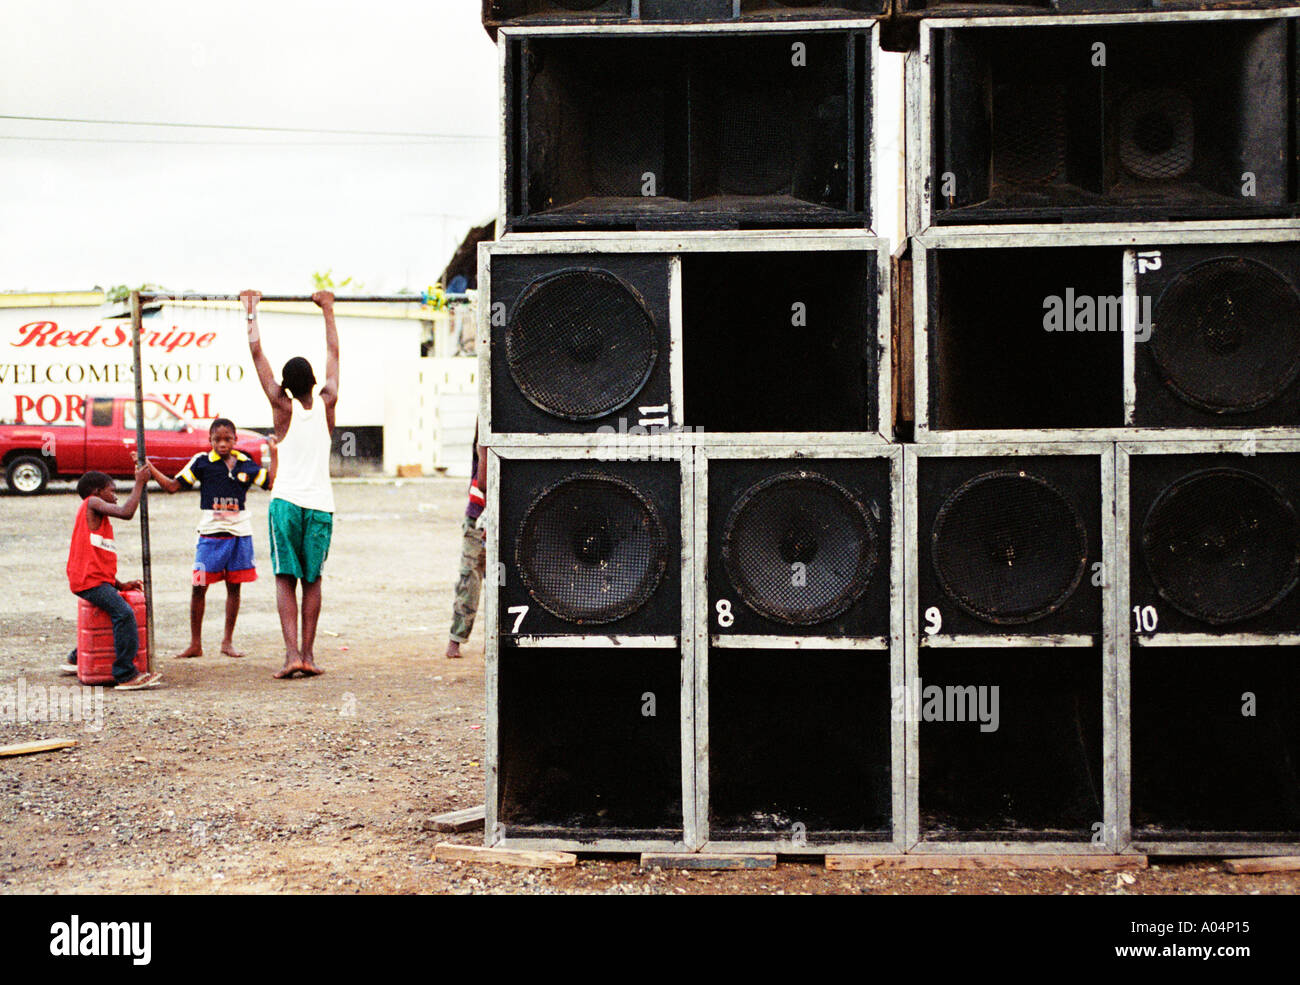 Bambini che giocavano nei pressi di alcuni oratori a Port Royal Kingston in Giamaica Foto Stock